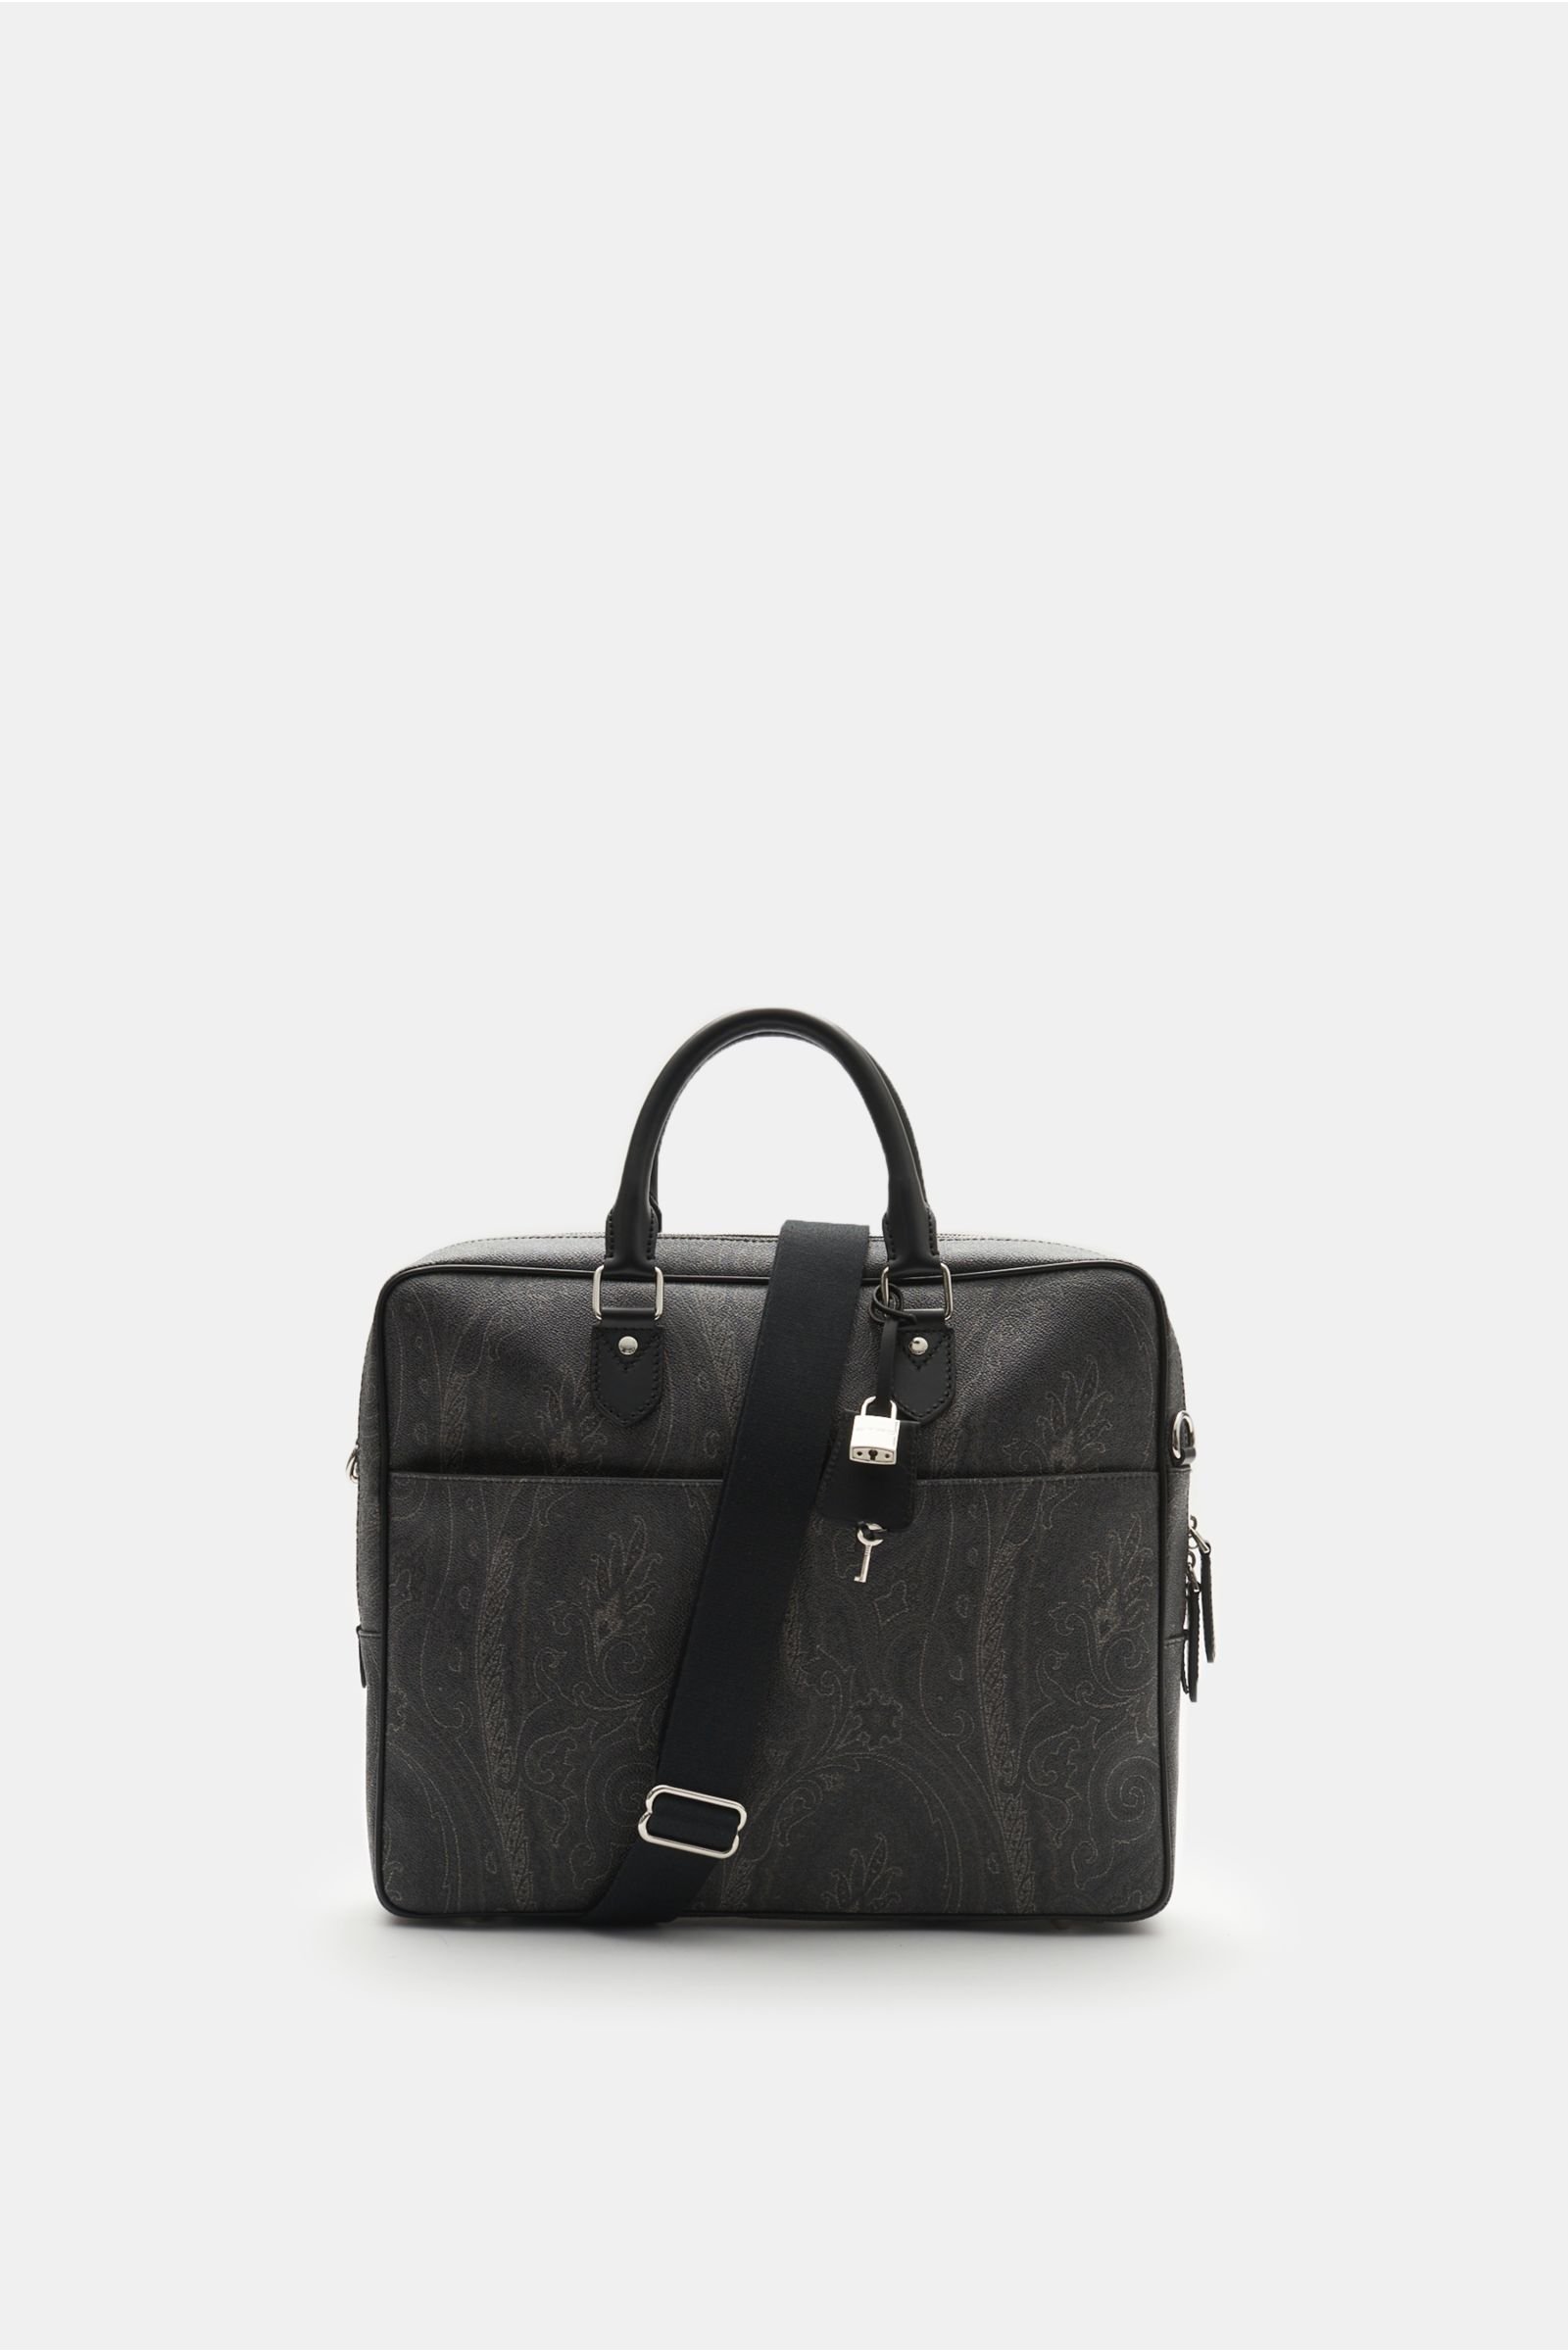 Briefcase black patterned